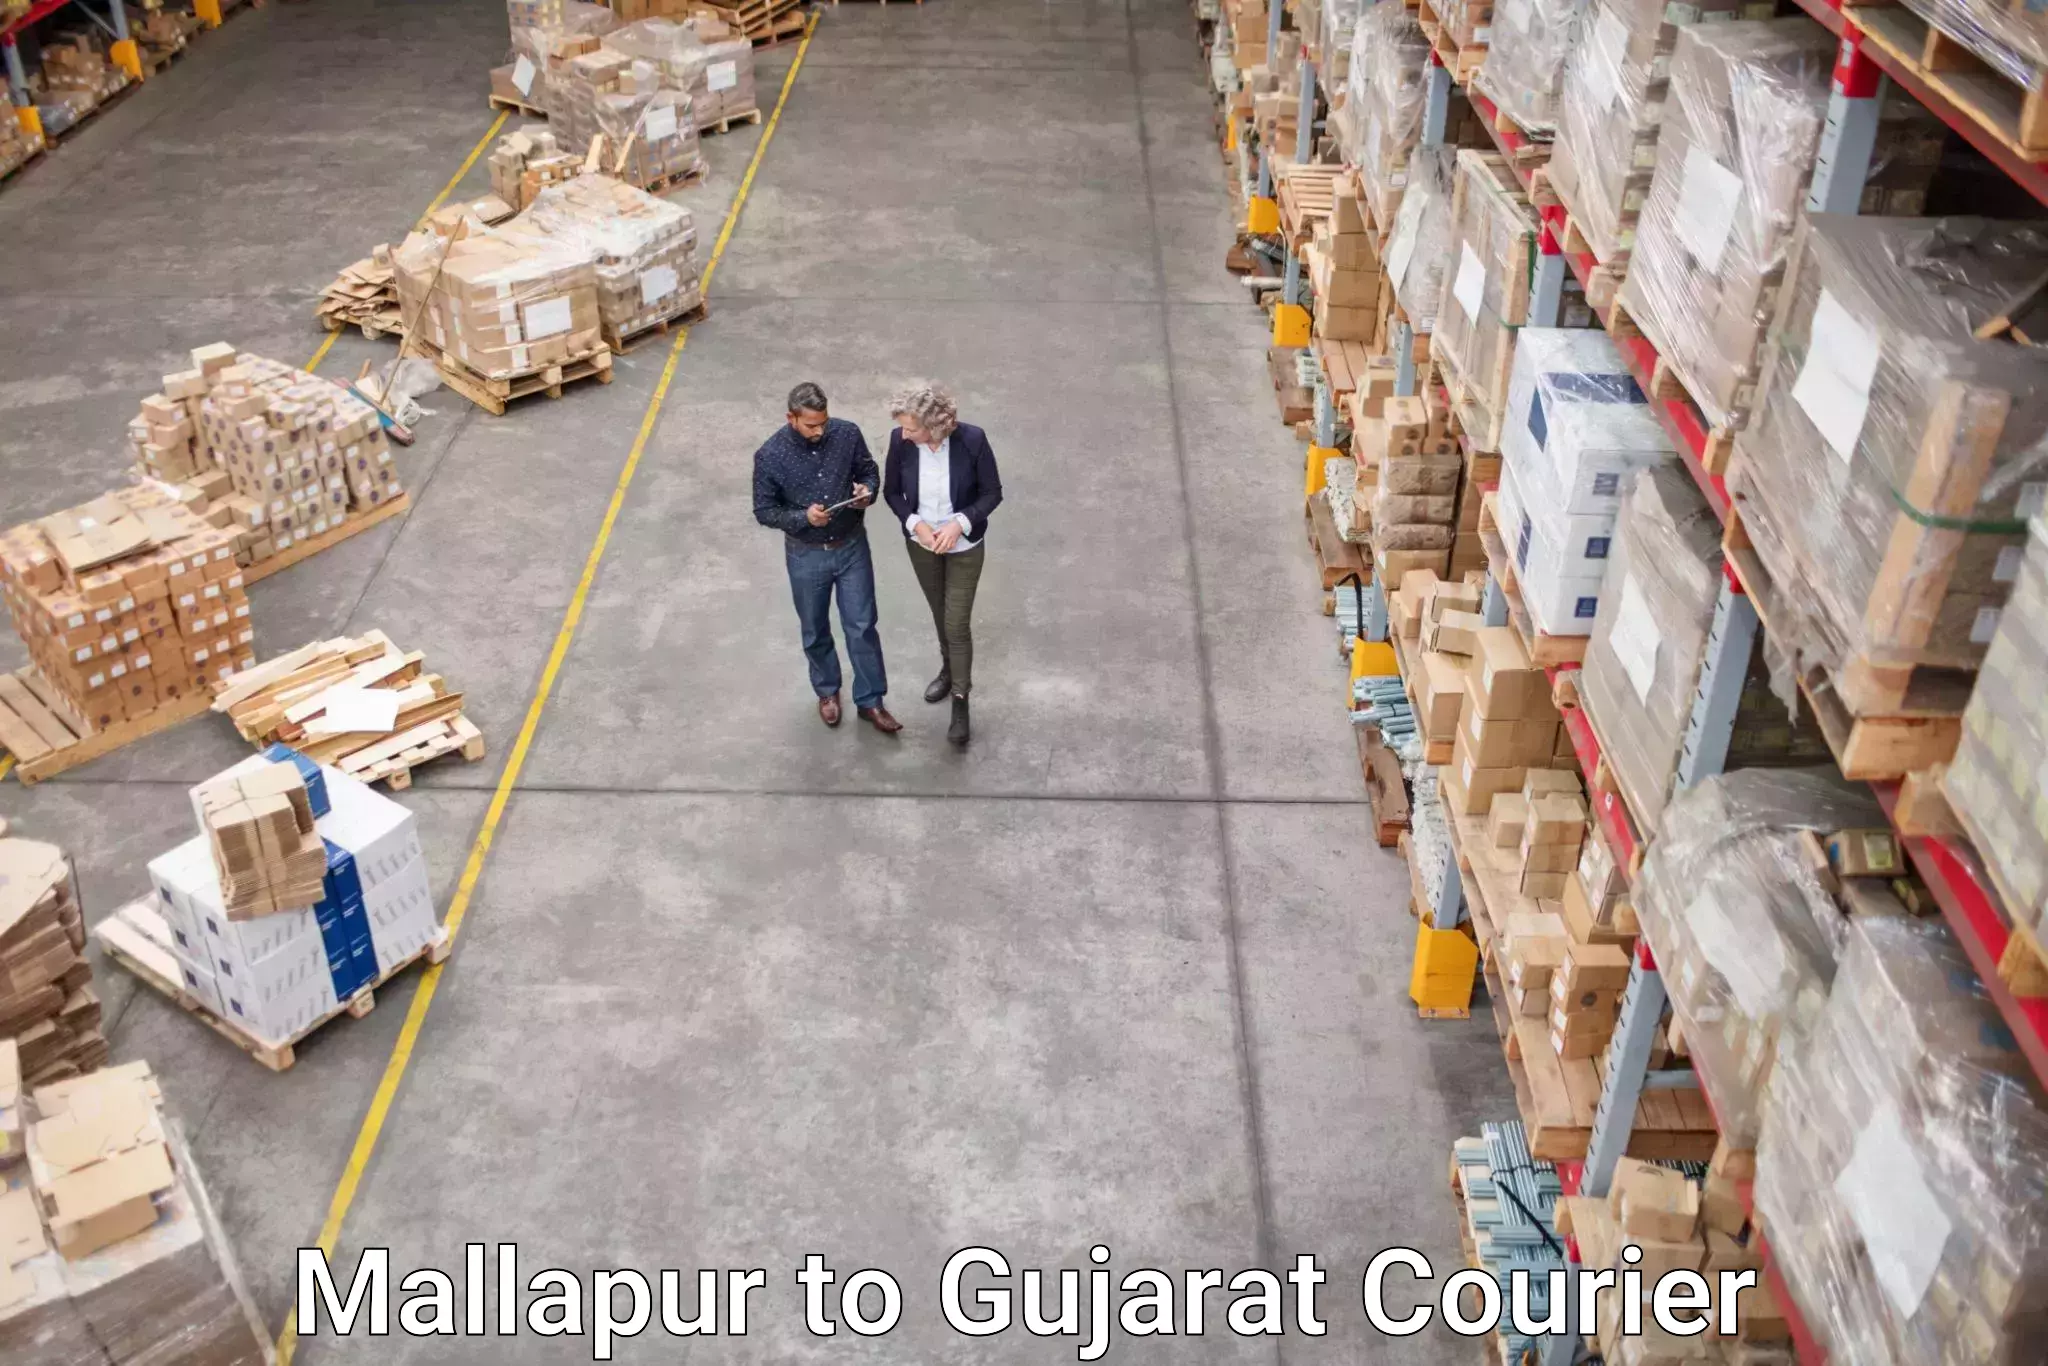 Courier service comparison Mallapur to Gujarat